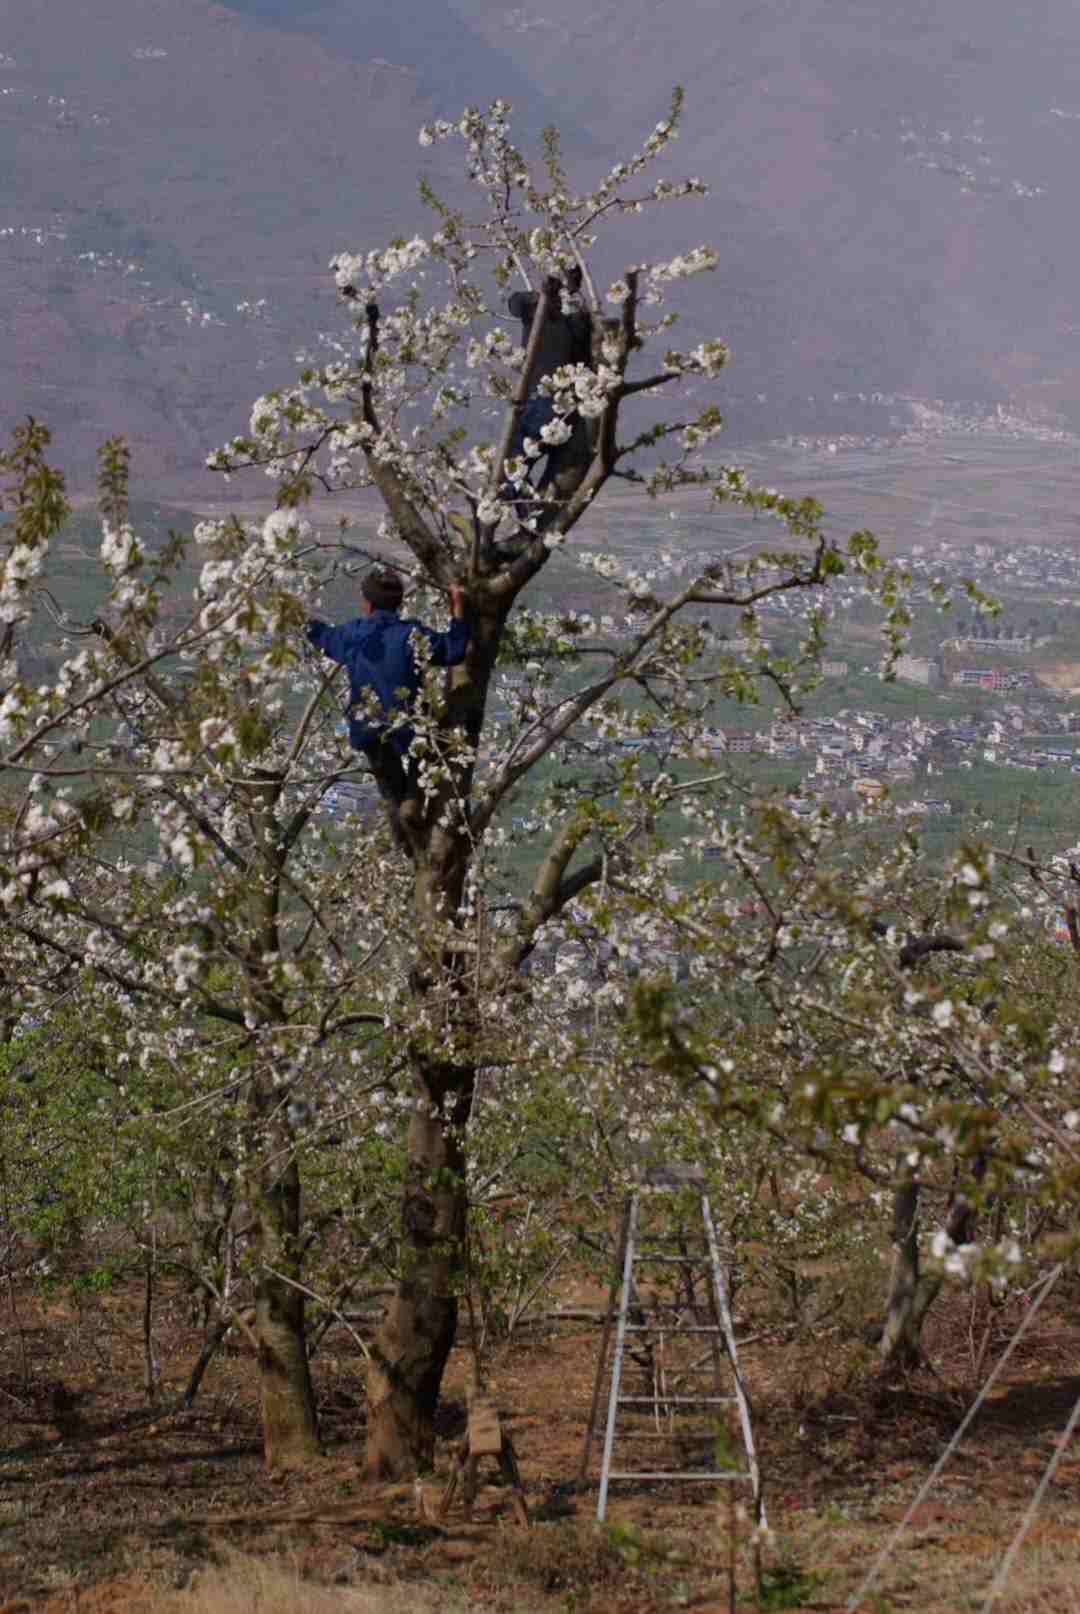 年近半百的农民伯伯,爬上樱桃树为樱桃授粉,修枝.